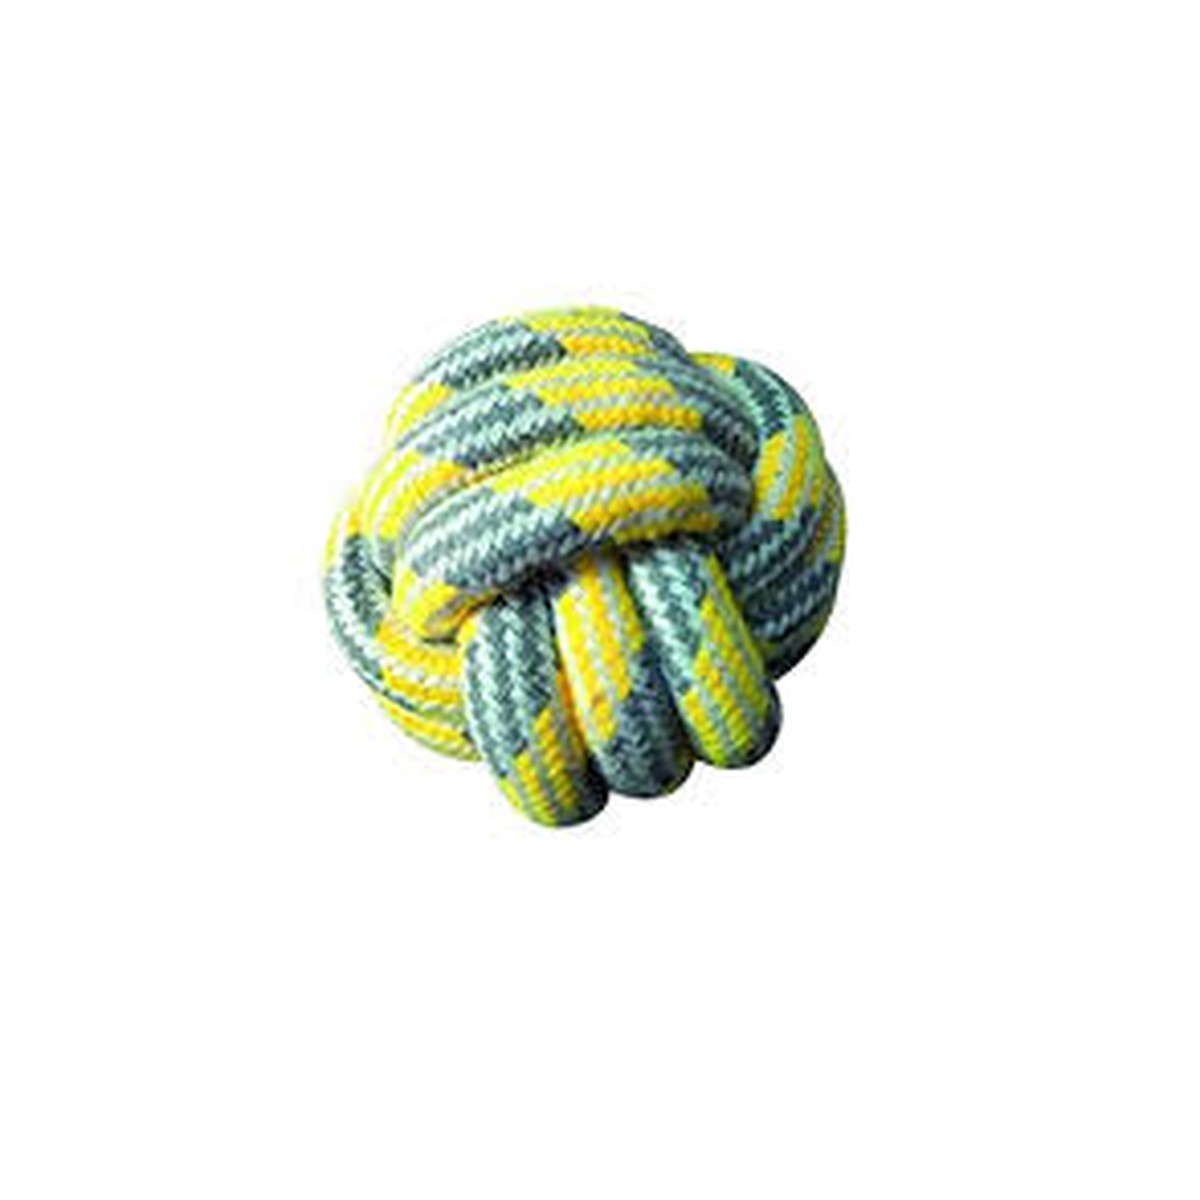   Jouet chien ball corde jaune pastel  7.5cm